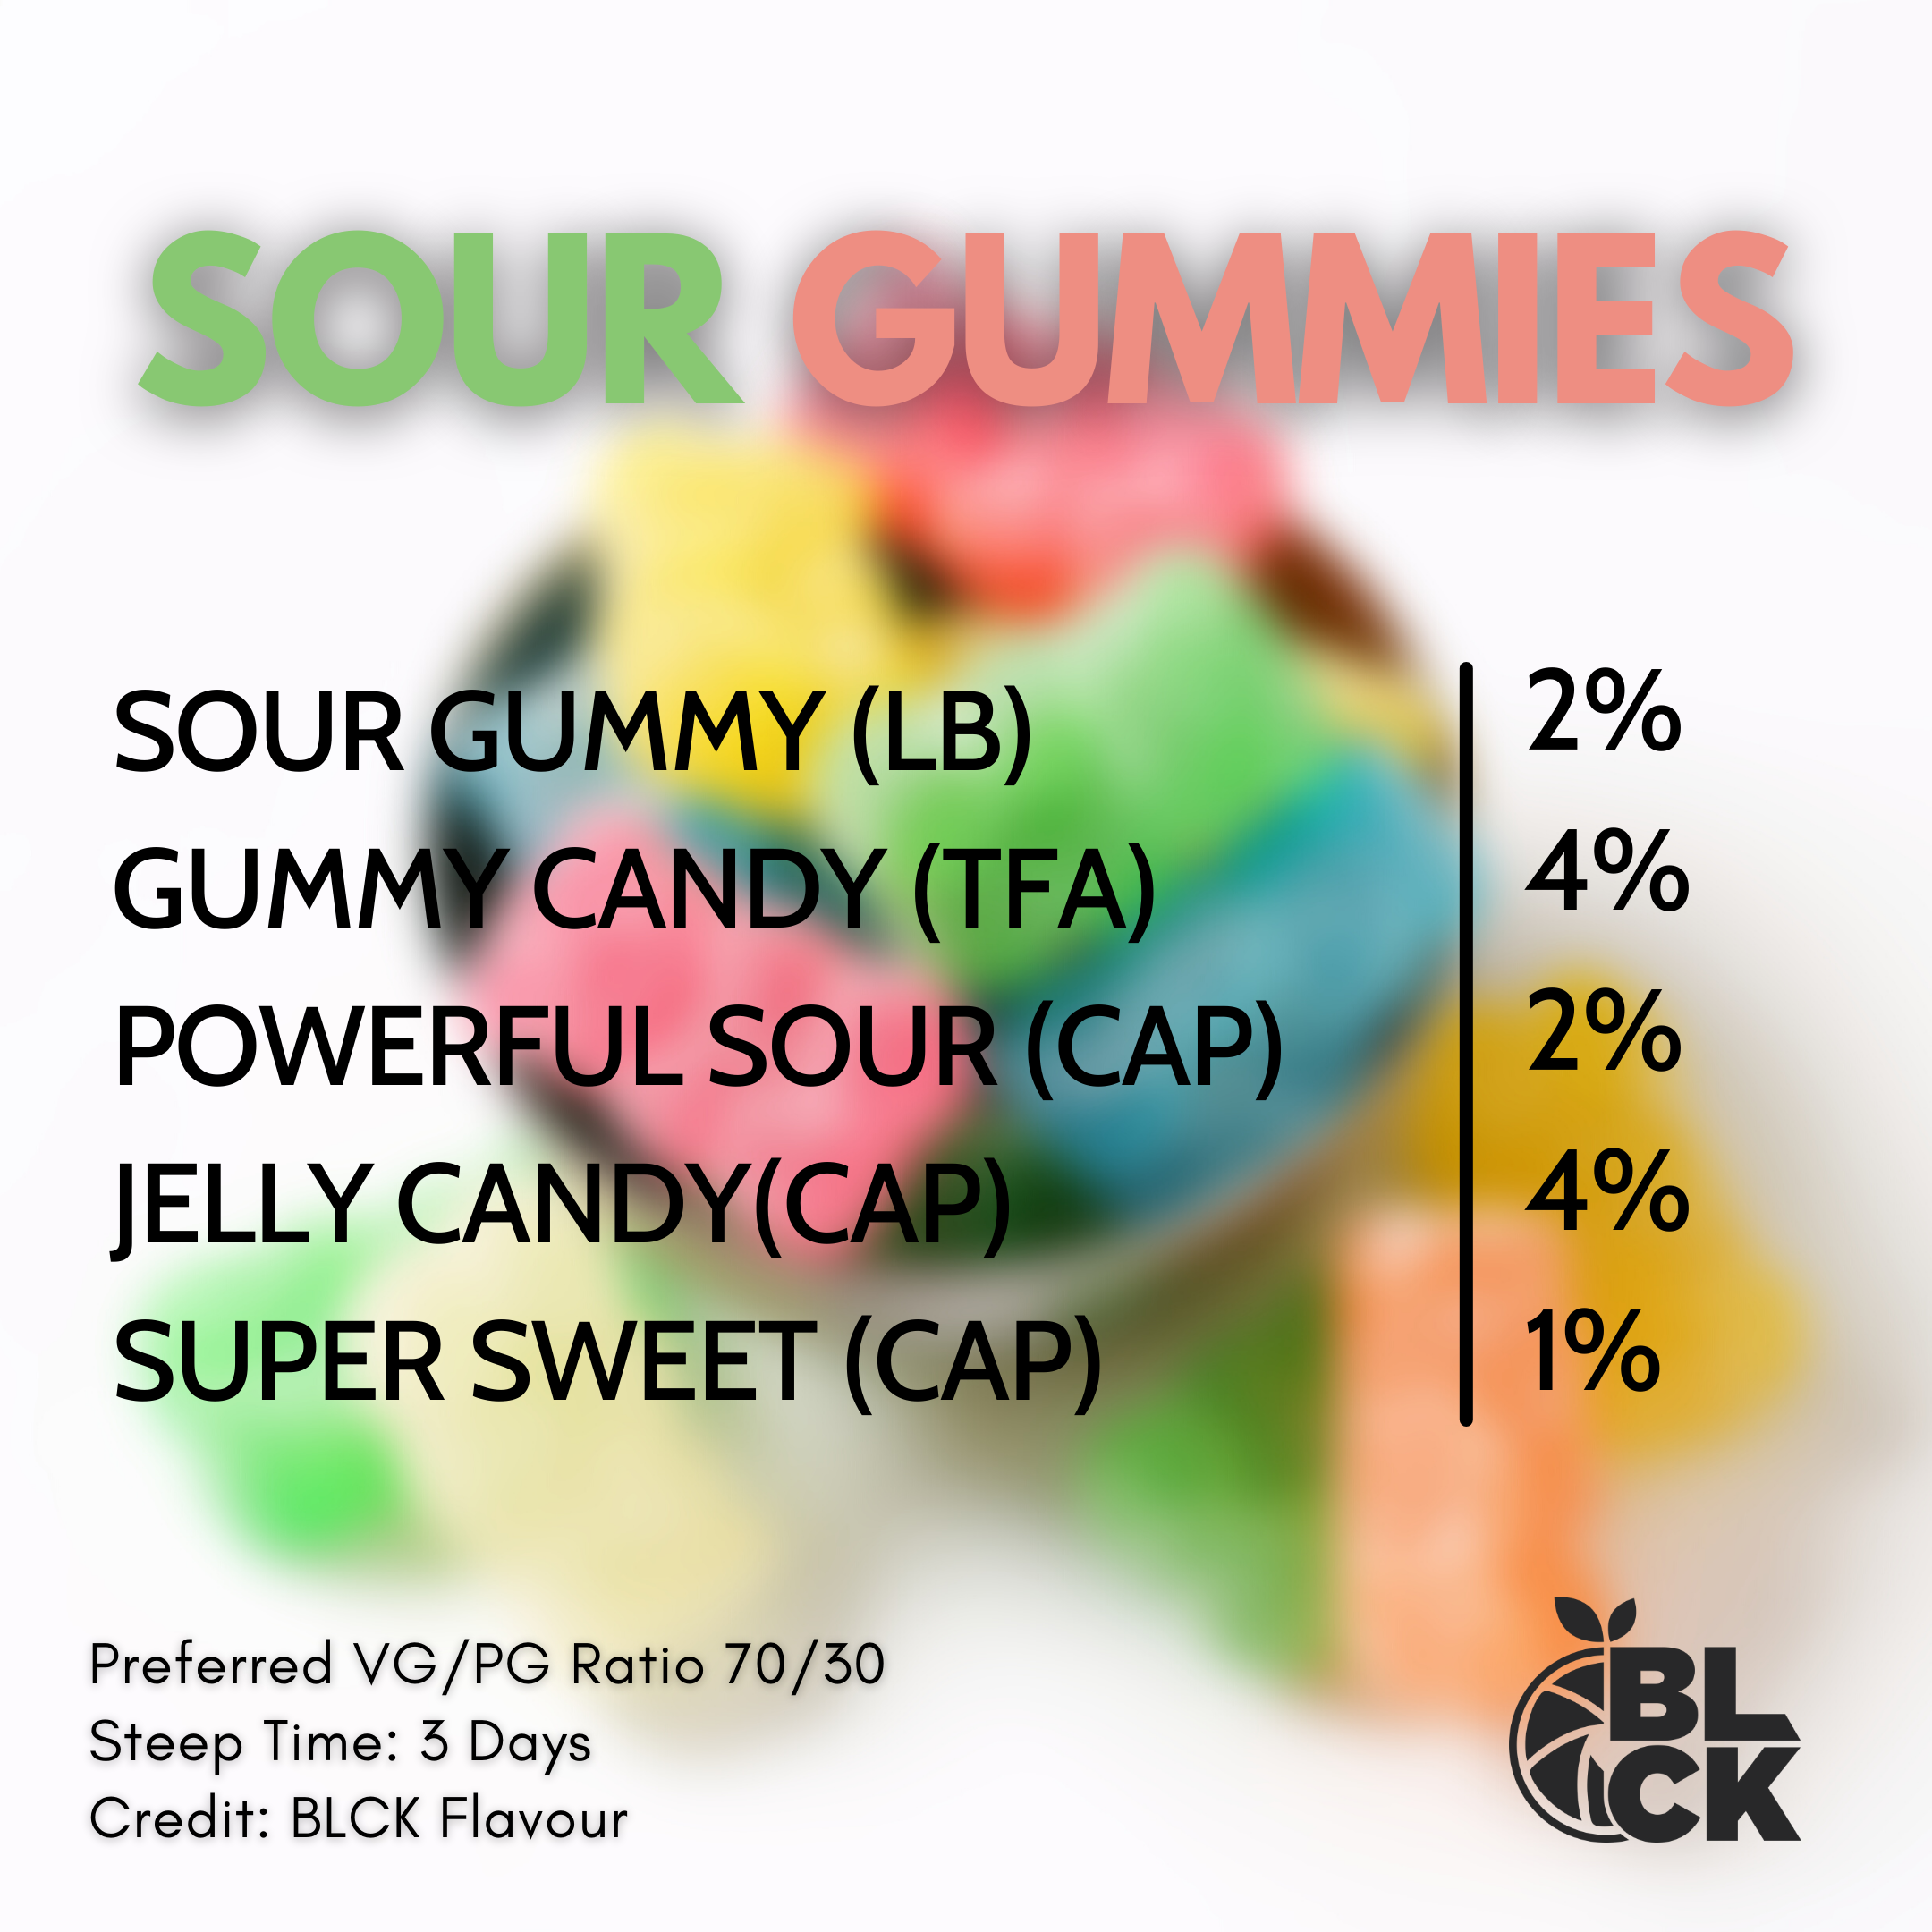 RB Sour Gummies Recipe Card